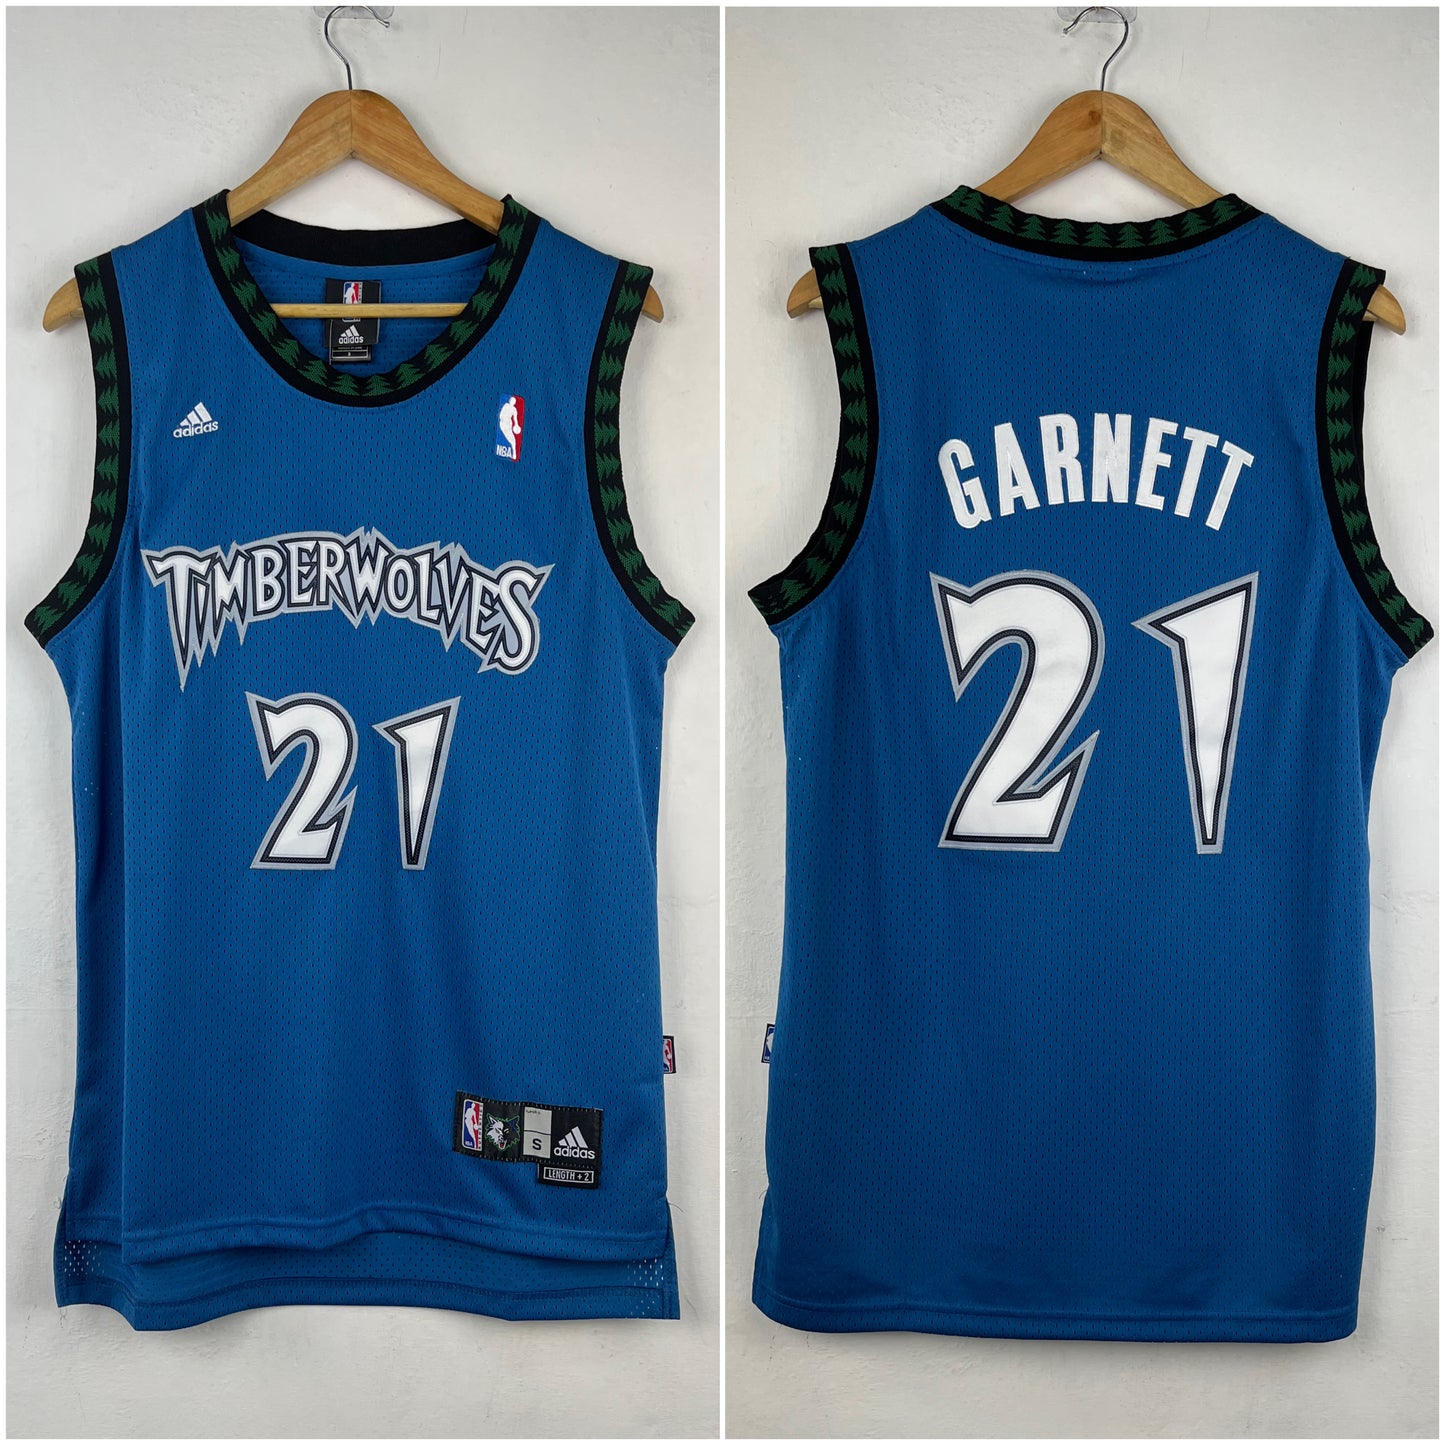 GARNETT 21 Blue  Minnesota Timberwolves NBA Jersey